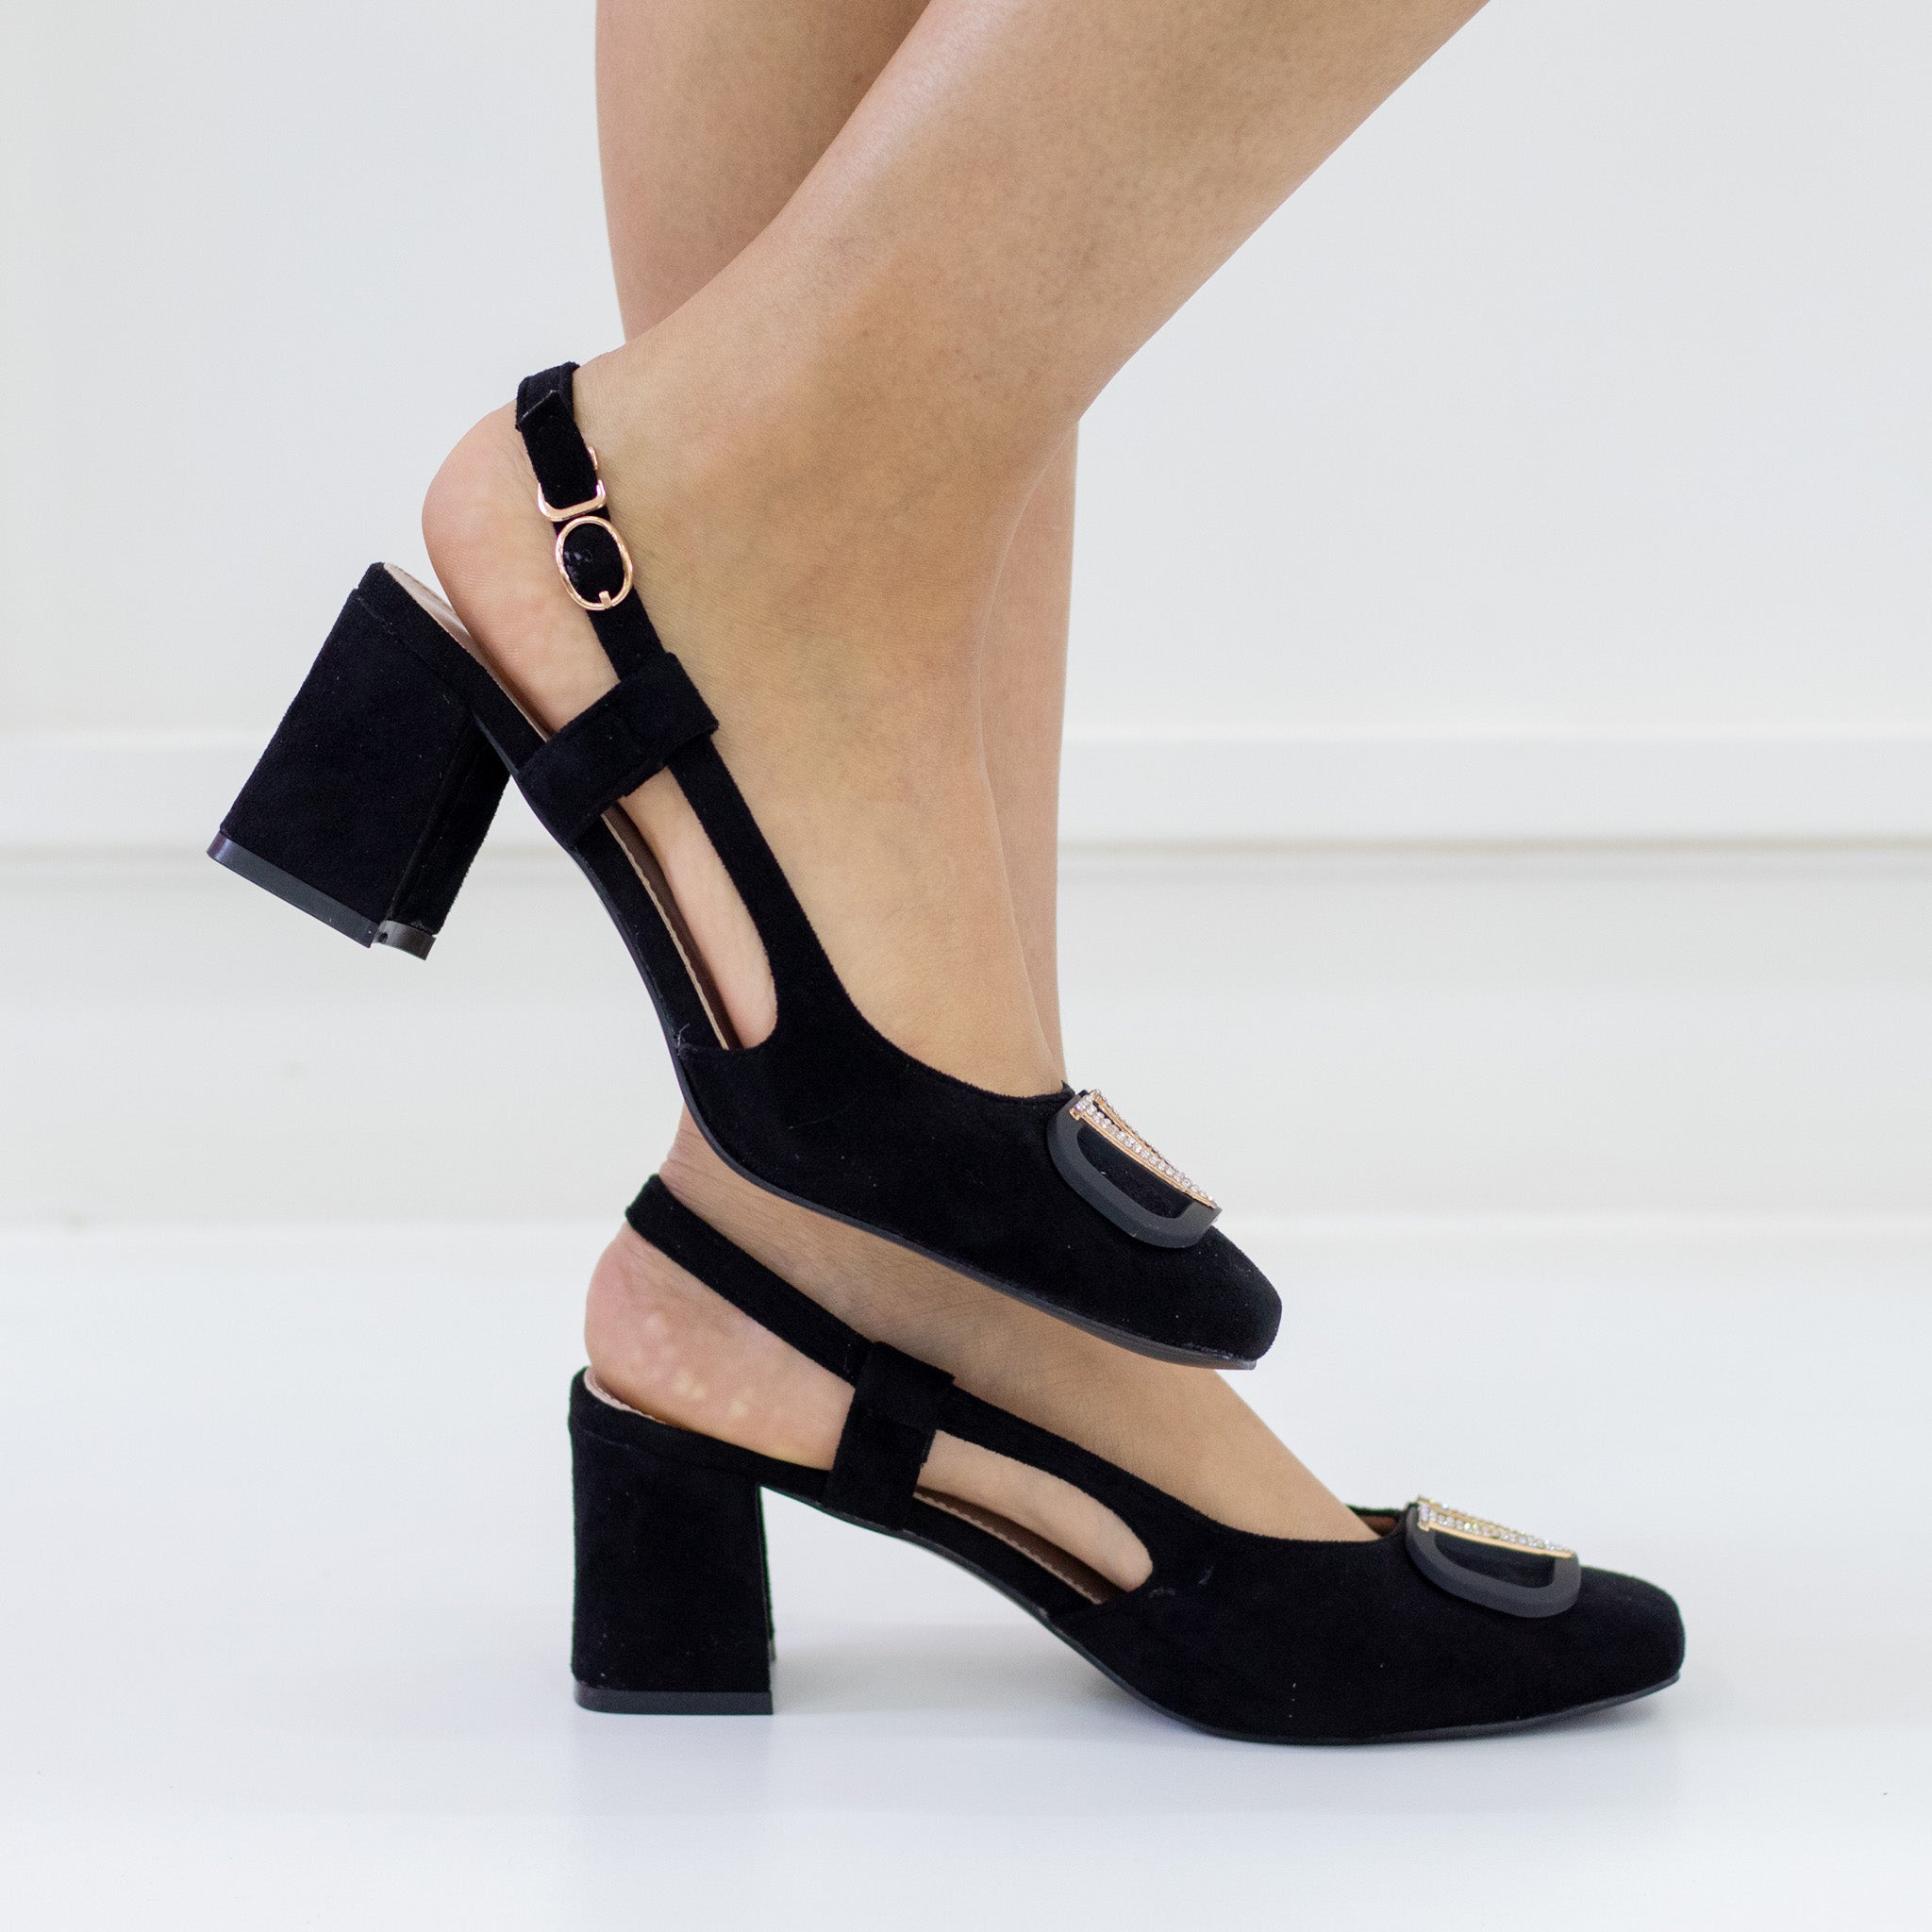 Black 6cm heel suide sling back with a gold trim olsen